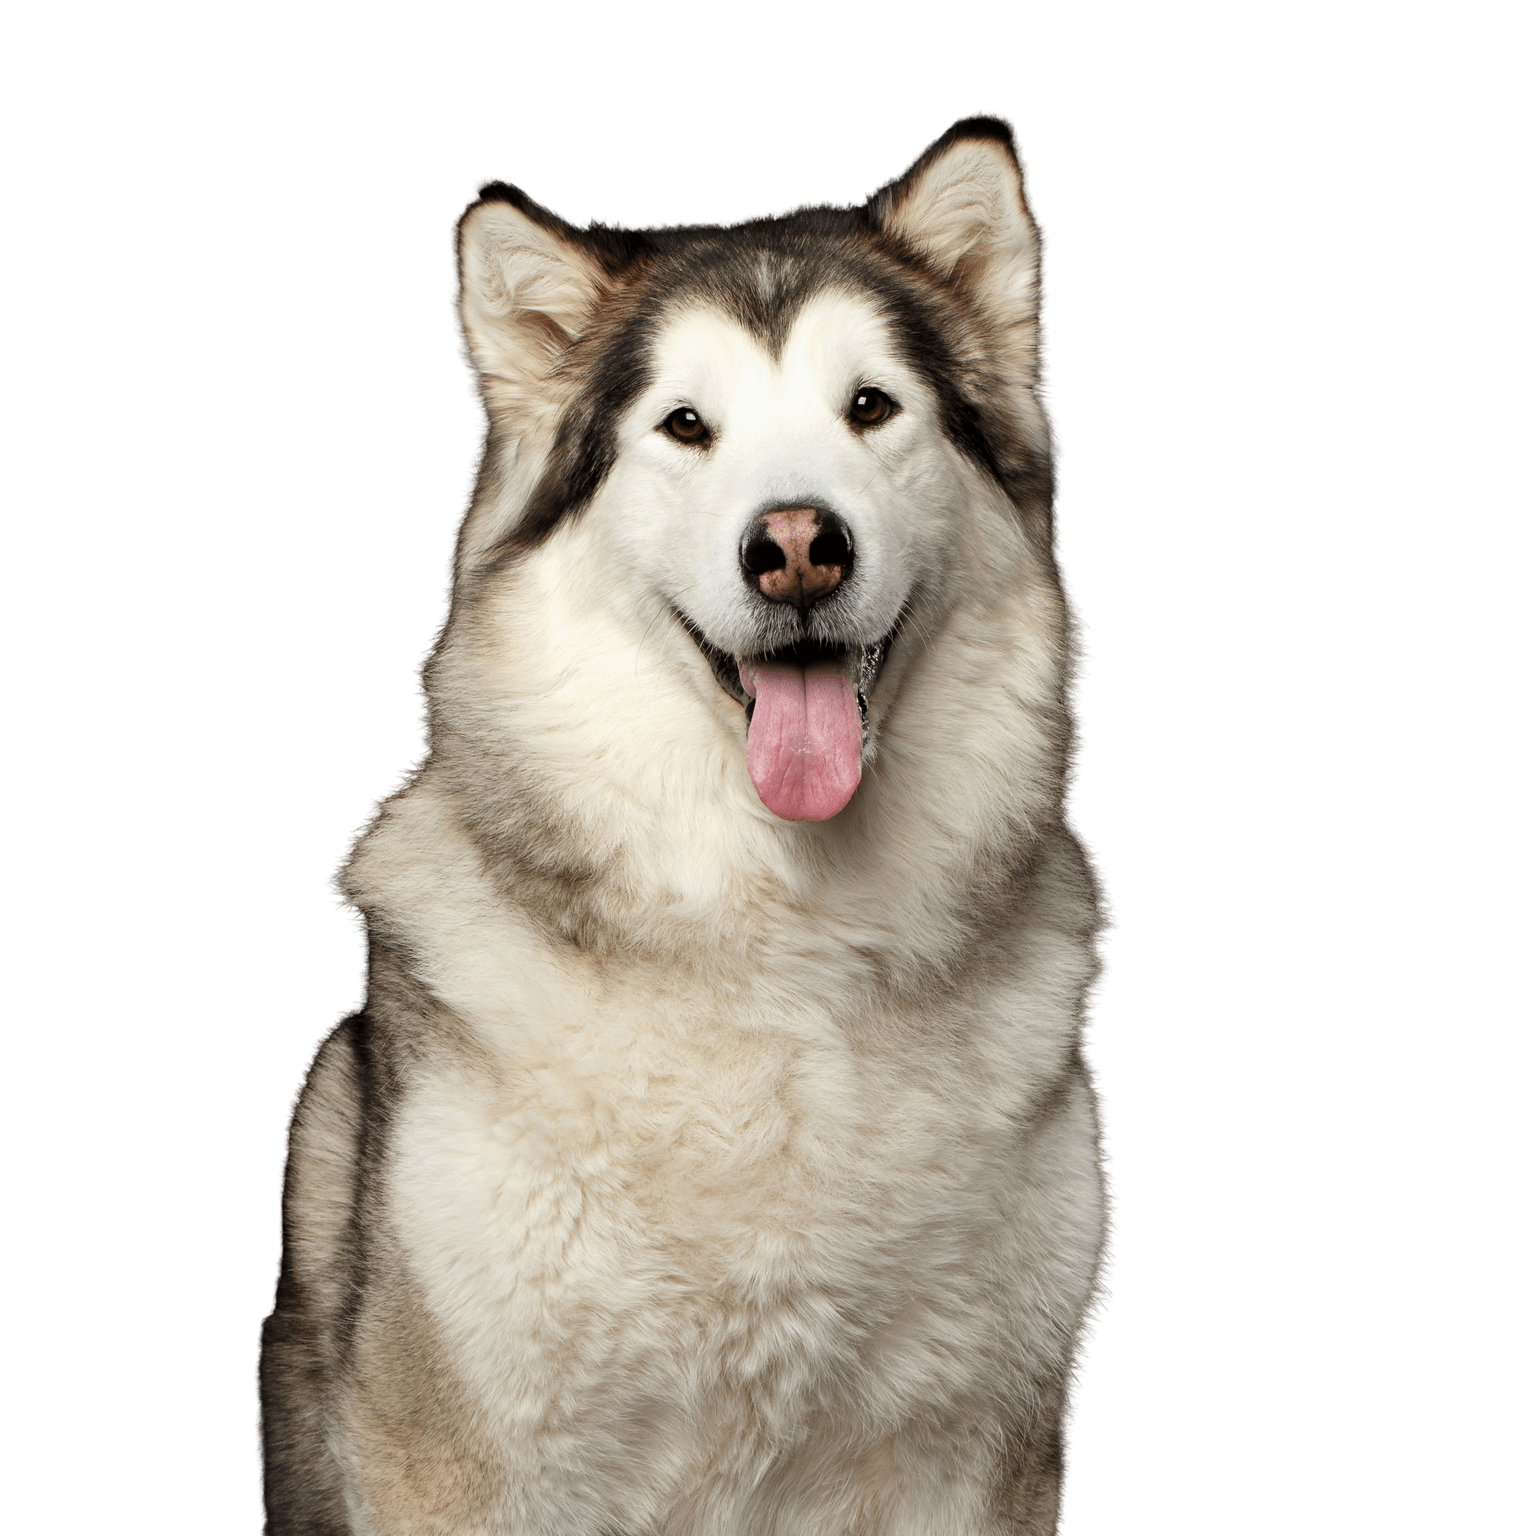 Perro, mamífero, vertebrado, Alaskan Malamute, Canidae, raza similar al Siberian Husky, raza de perro, carnívoro, perro blanco grande, perro de pelo largo